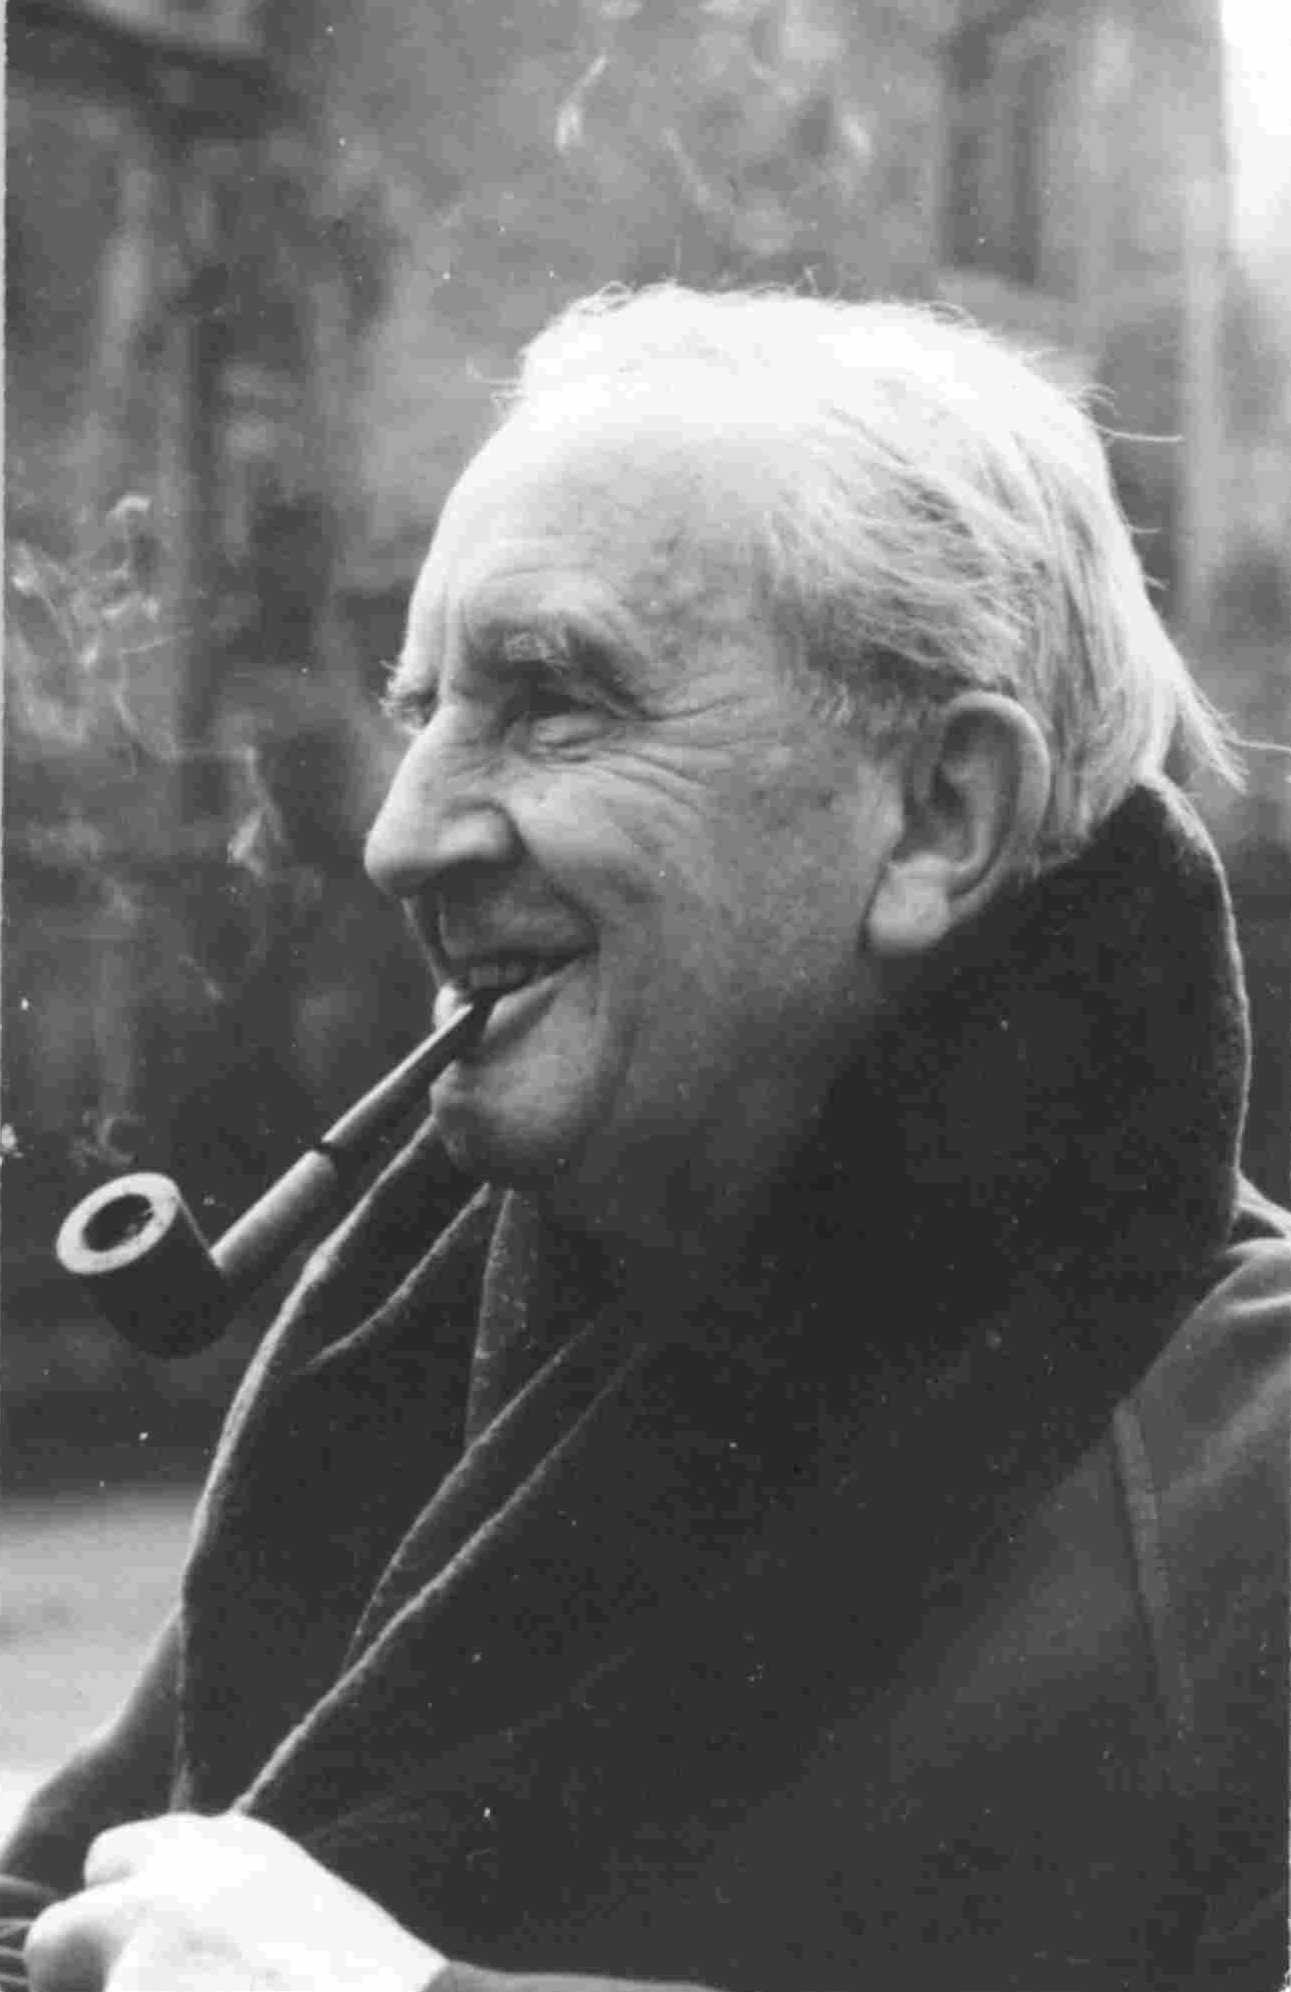 John Ronald Reuel Tolkien